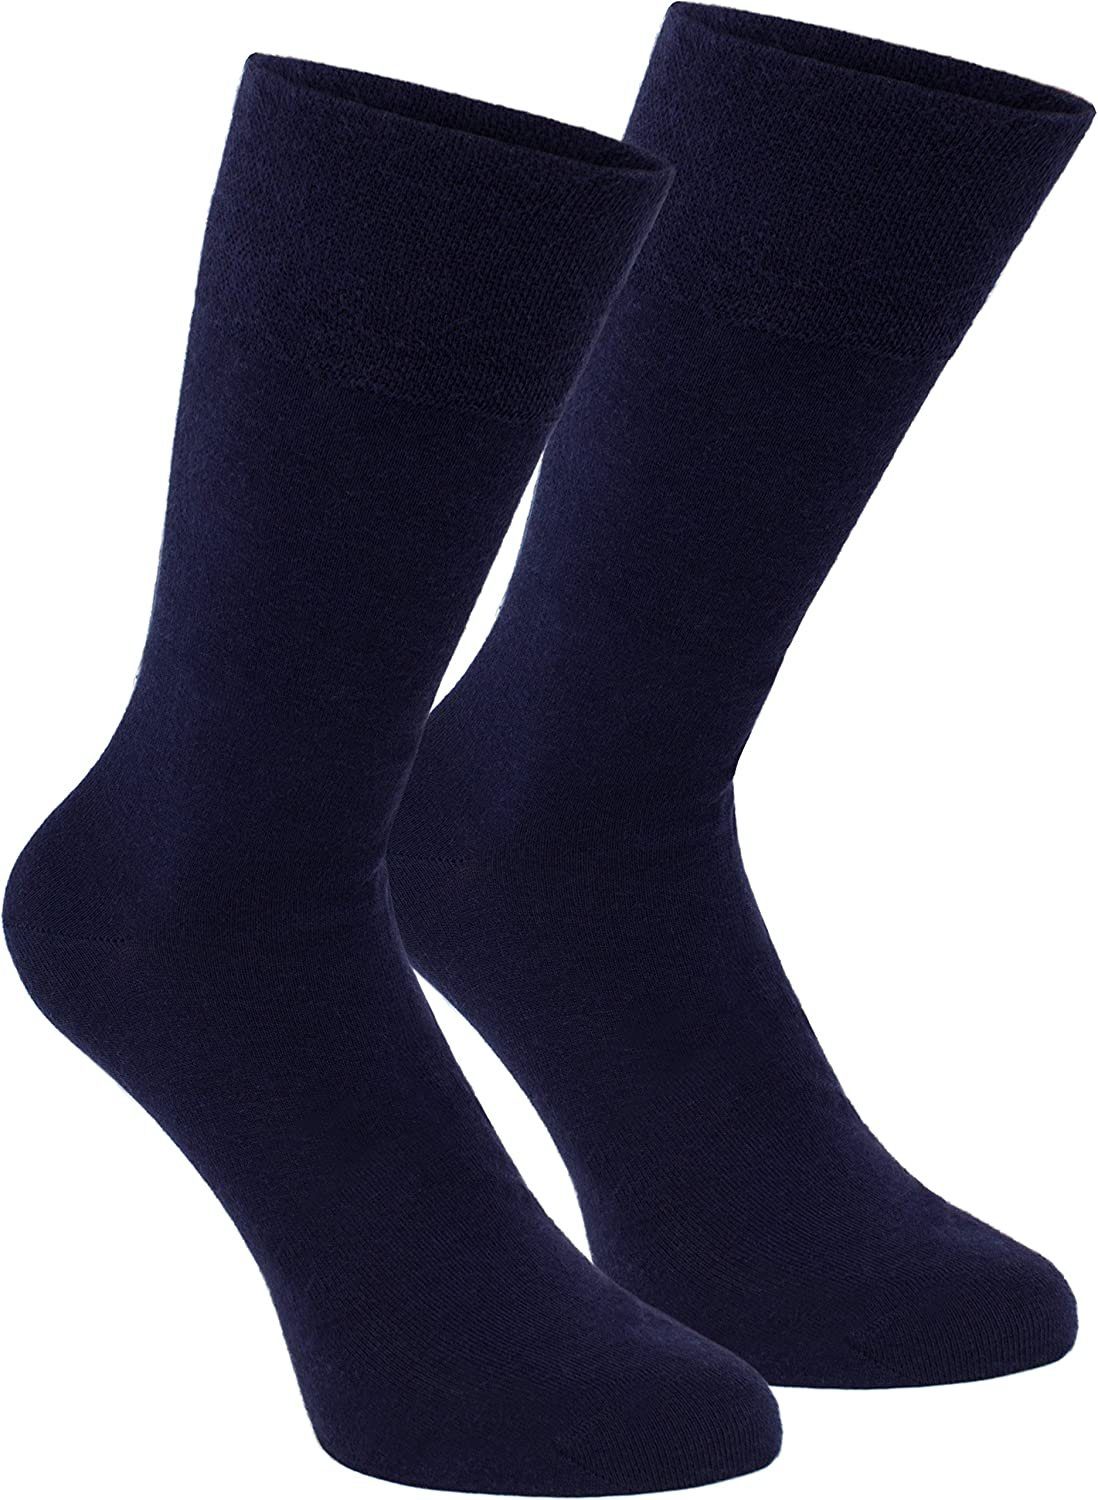 BRUBAKER Socken Herren Socken - Lenzing Modal - Schwarz, Dunkelblau -  Premium Qualität (Business Socken, 8-Paar, Größe 41-46) Lange Herrensocken  in Geschenk Box - Weich und Bequem